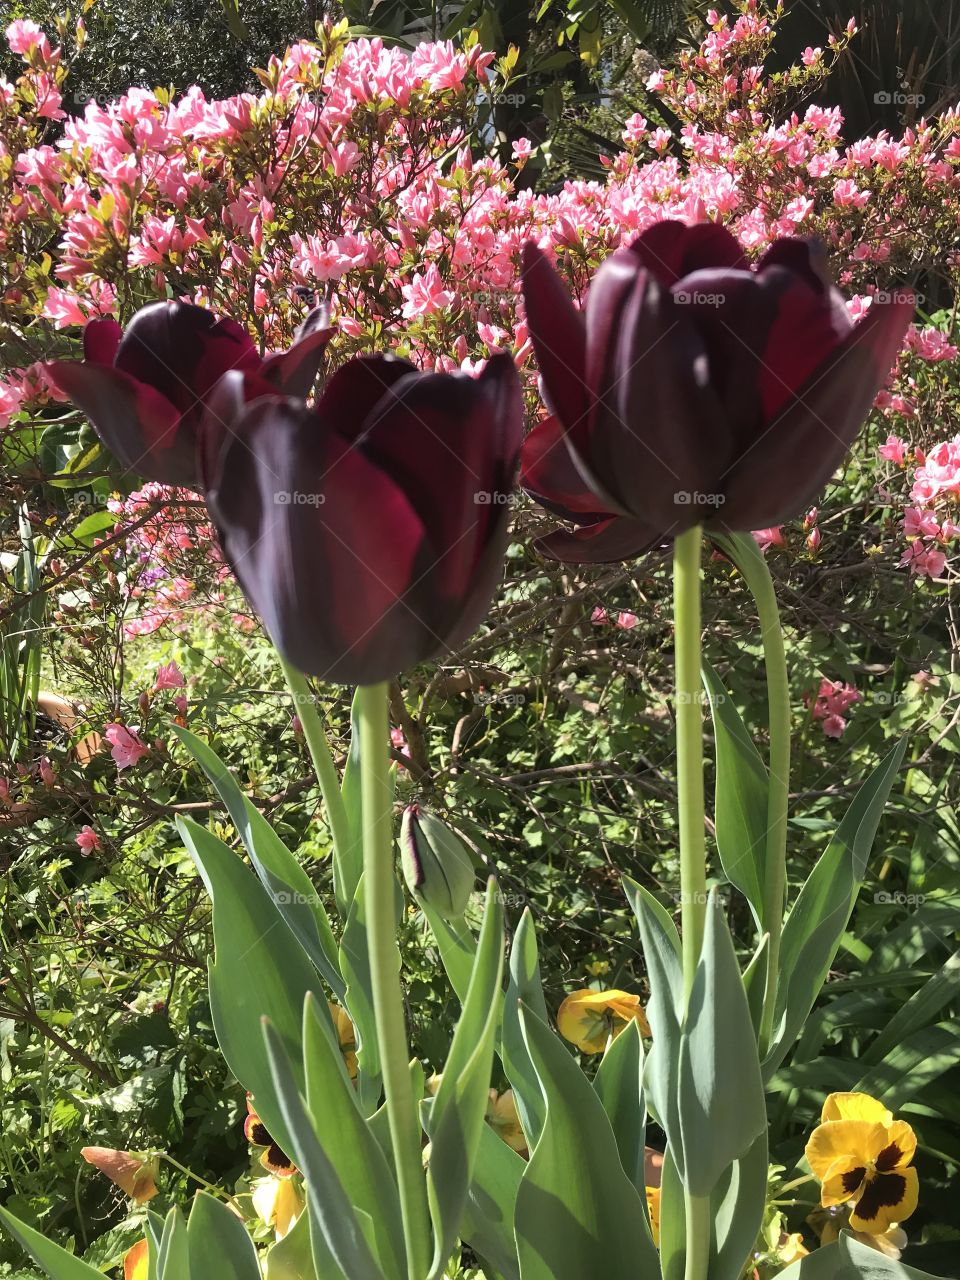 Queen of Night tulips in front of pink azaleas 